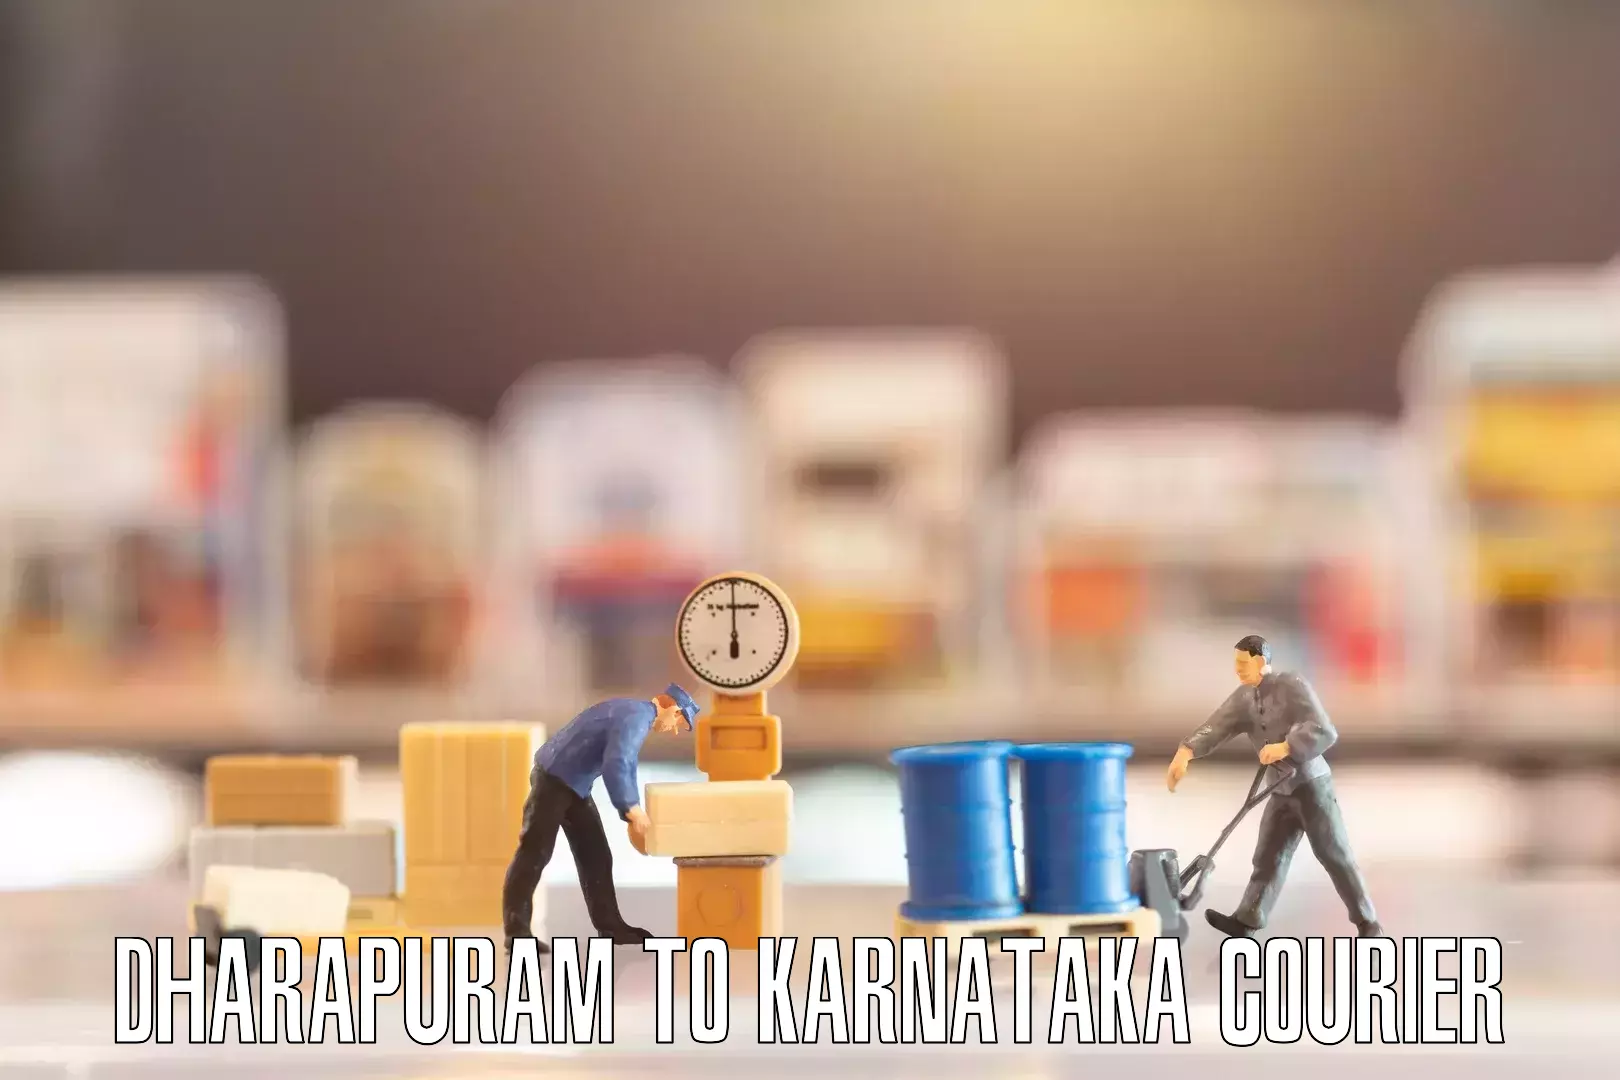 Reliable furniture movers Dharapuram to Karnataka